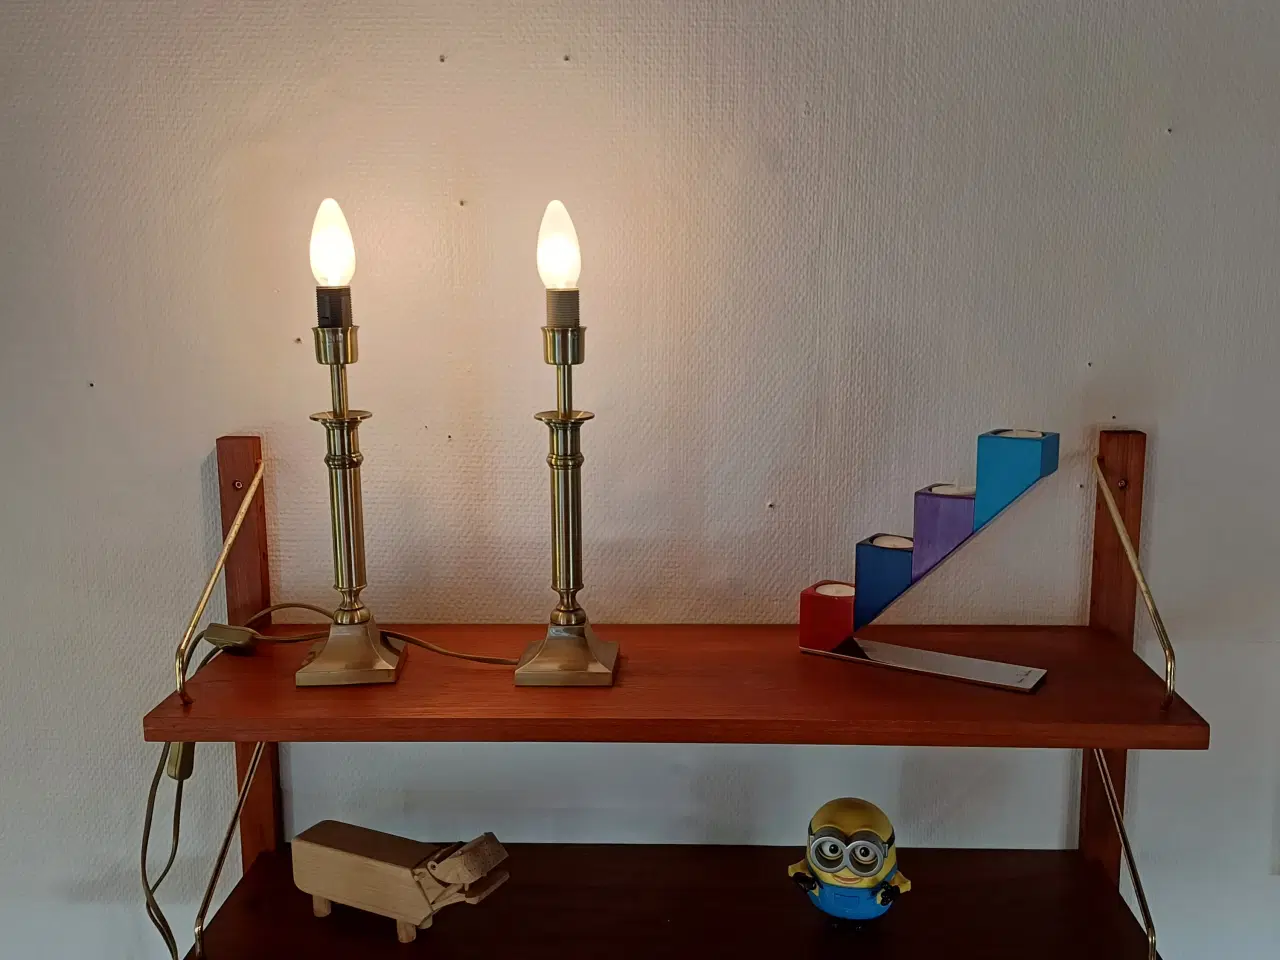 Billede 2 - To flotte lamper fra lamp gustaf ab